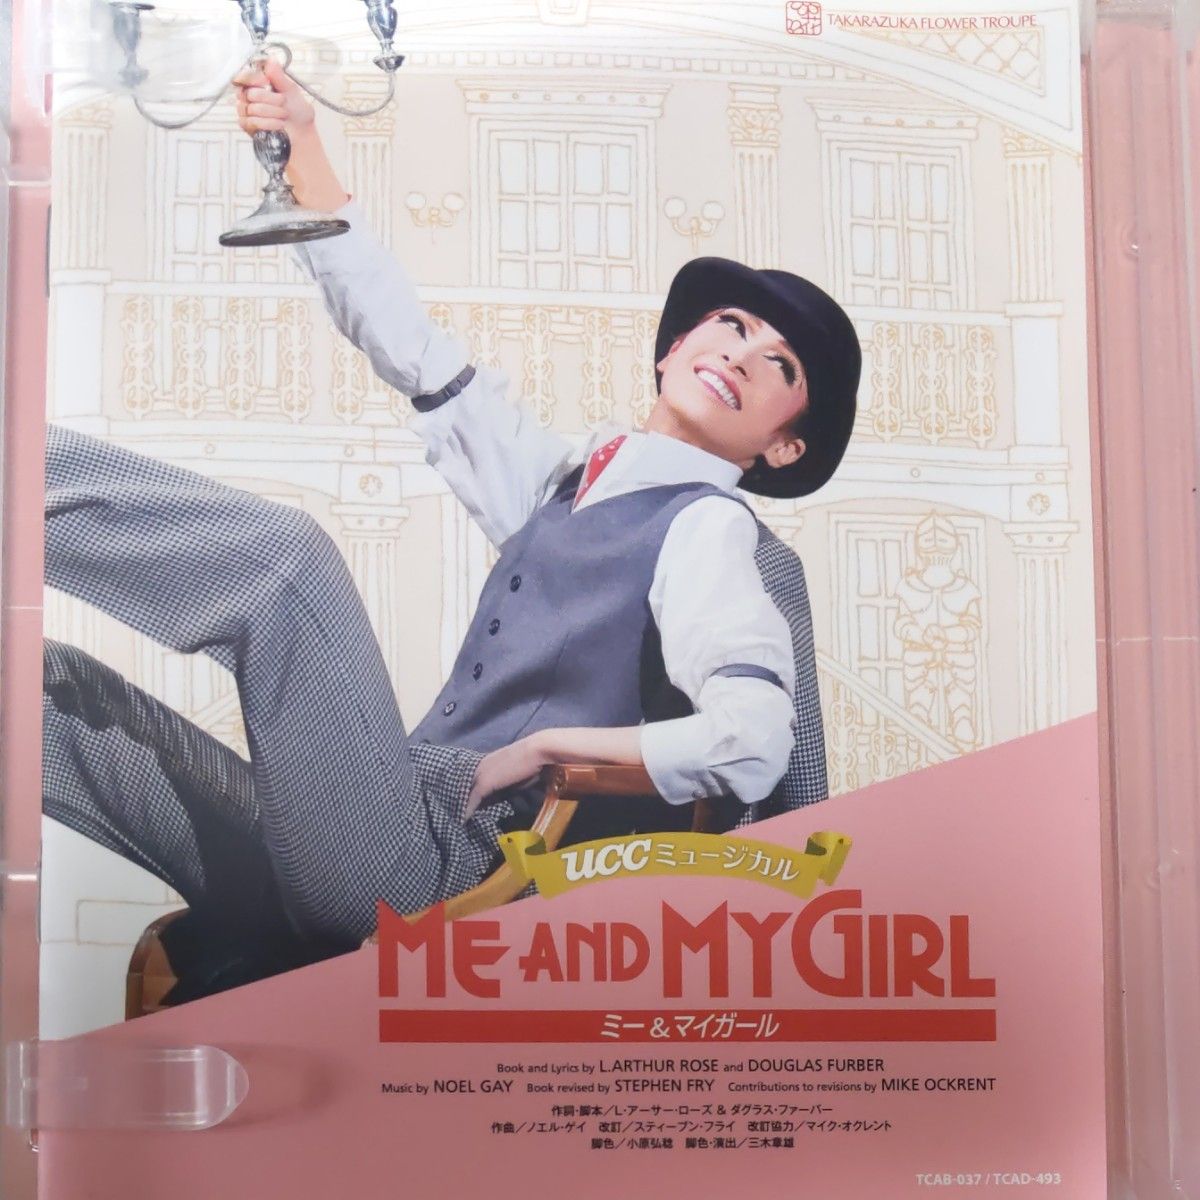 宝塚花組 「 ME AND MY GIRL 」 blu-ray 明日海りお 柚香光 芹香斗亜